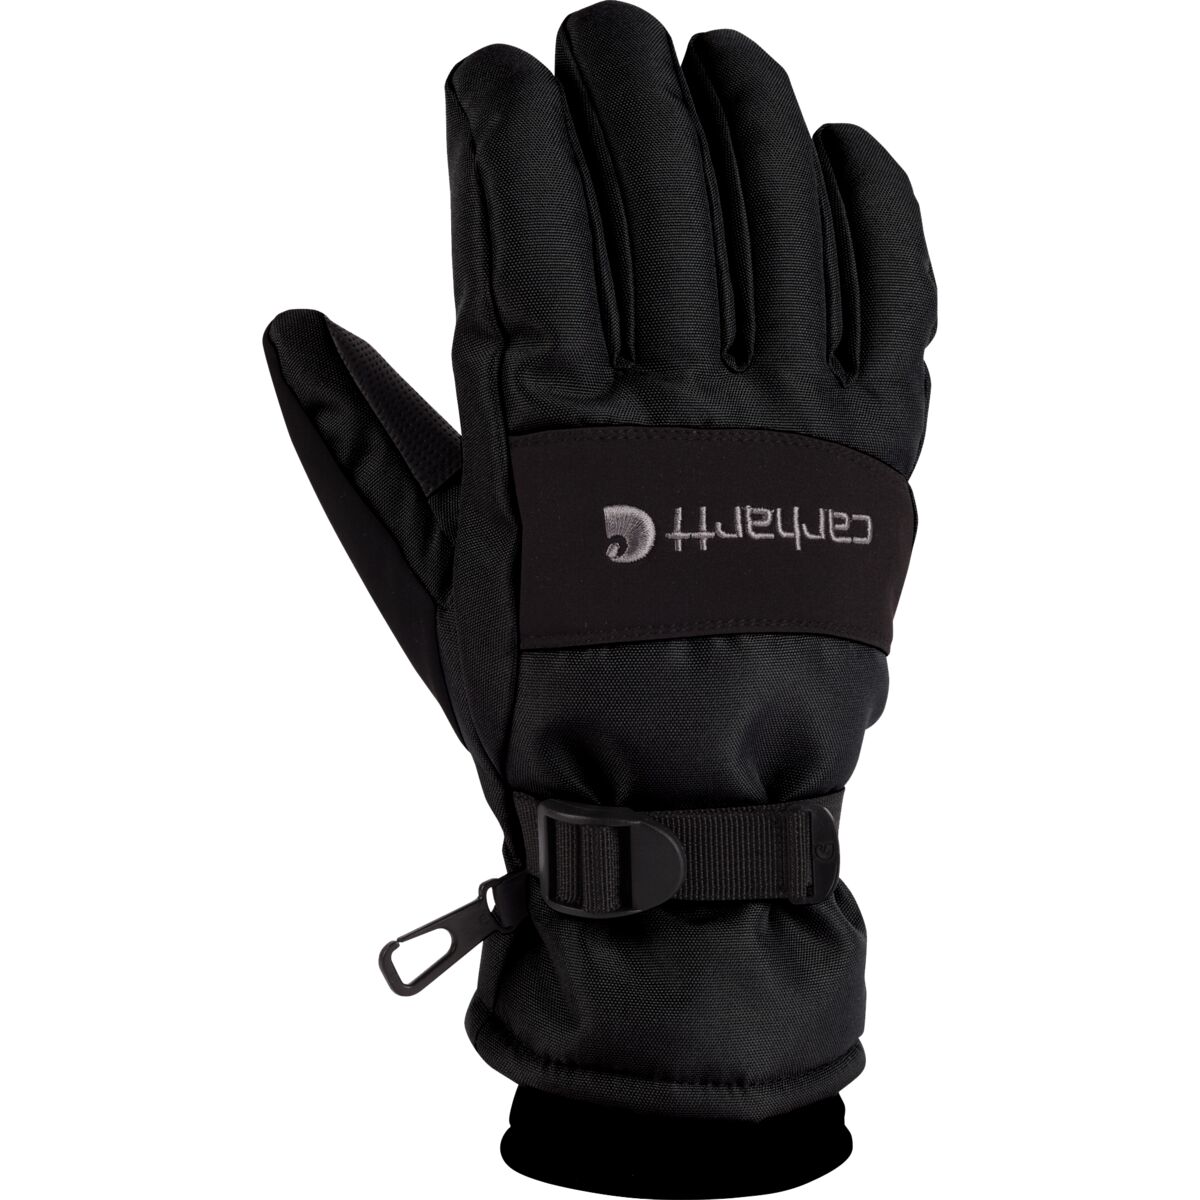 Men's Waterproof Insulated Winter Gloves